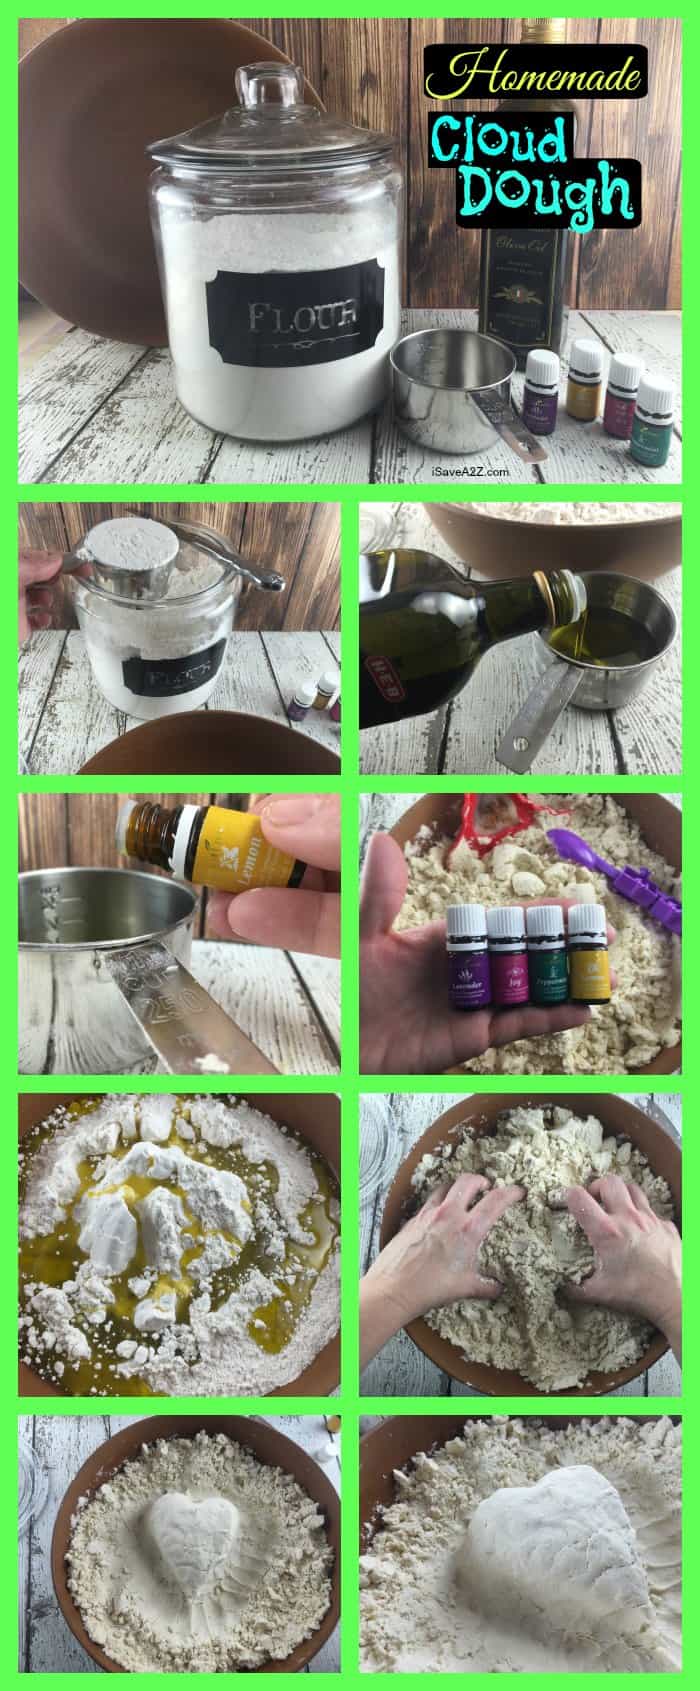 2 ingredient cloud dough recipe using essential oils